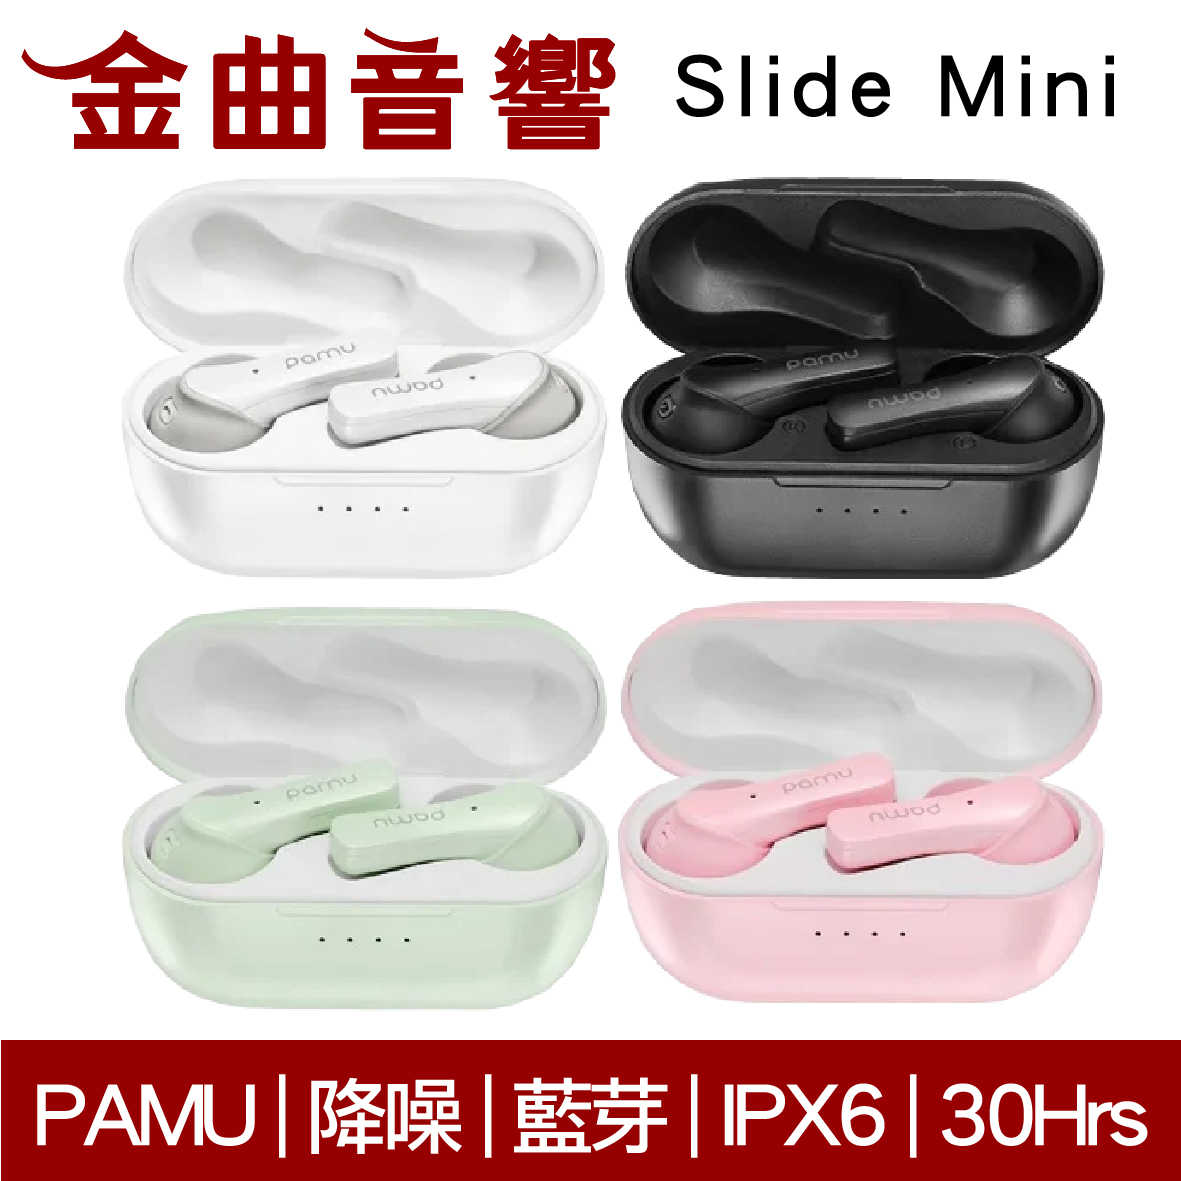 PaMu Slide Mini 綠 降噪 IPX6 通話 雙麥克風 真無線 藍芽 耳機 | 金曲音響